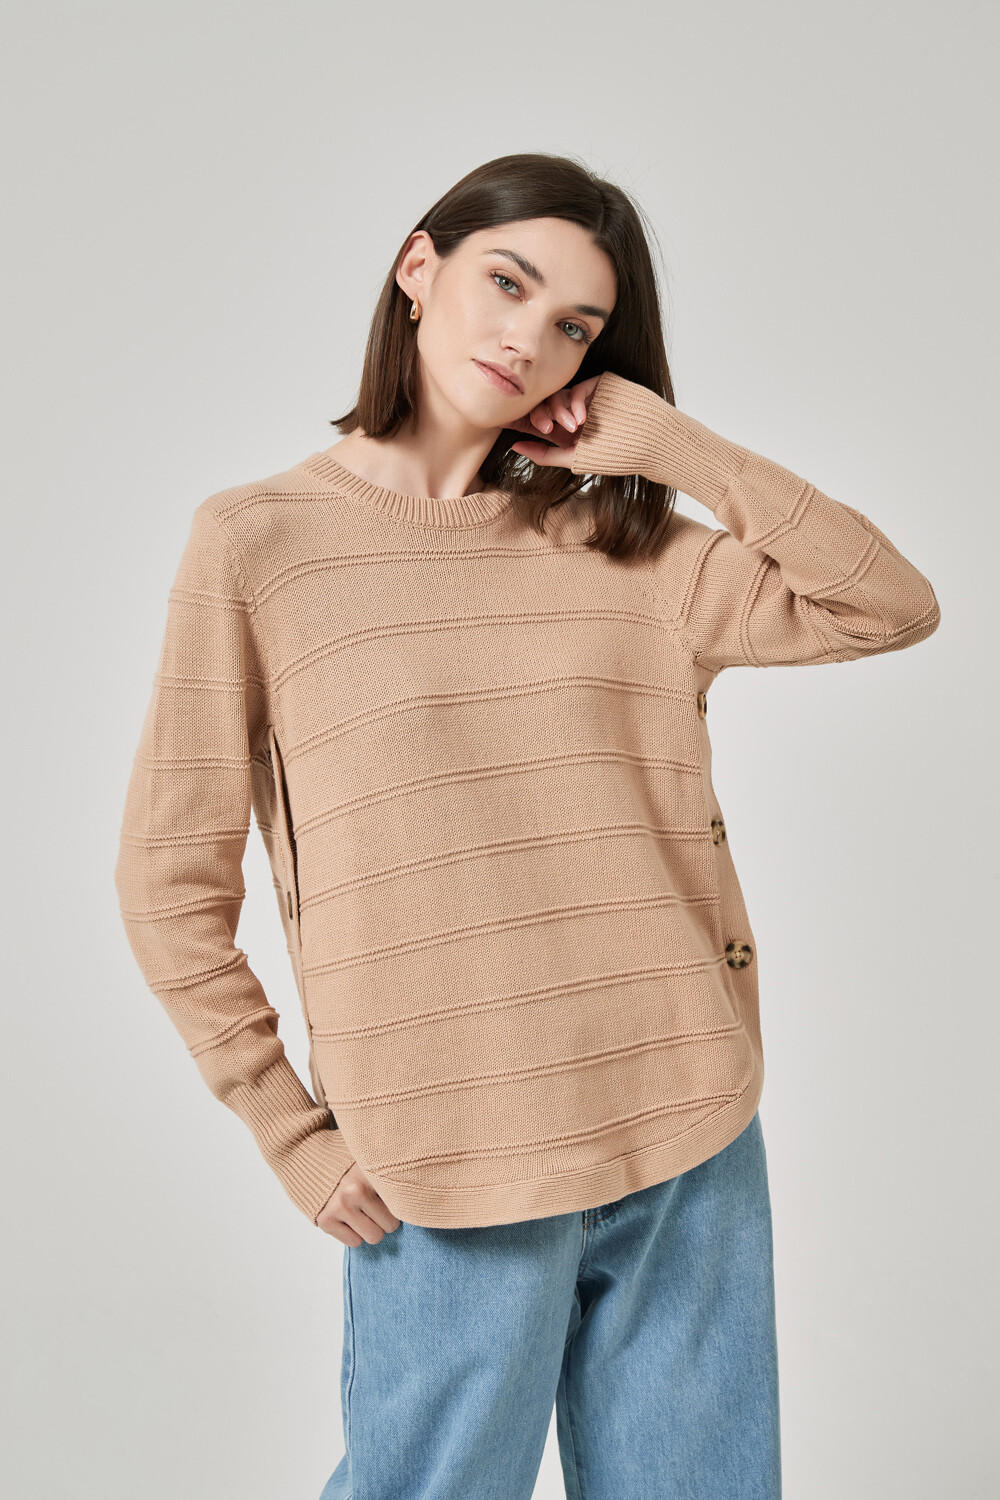 Sweater Galmi Caqui